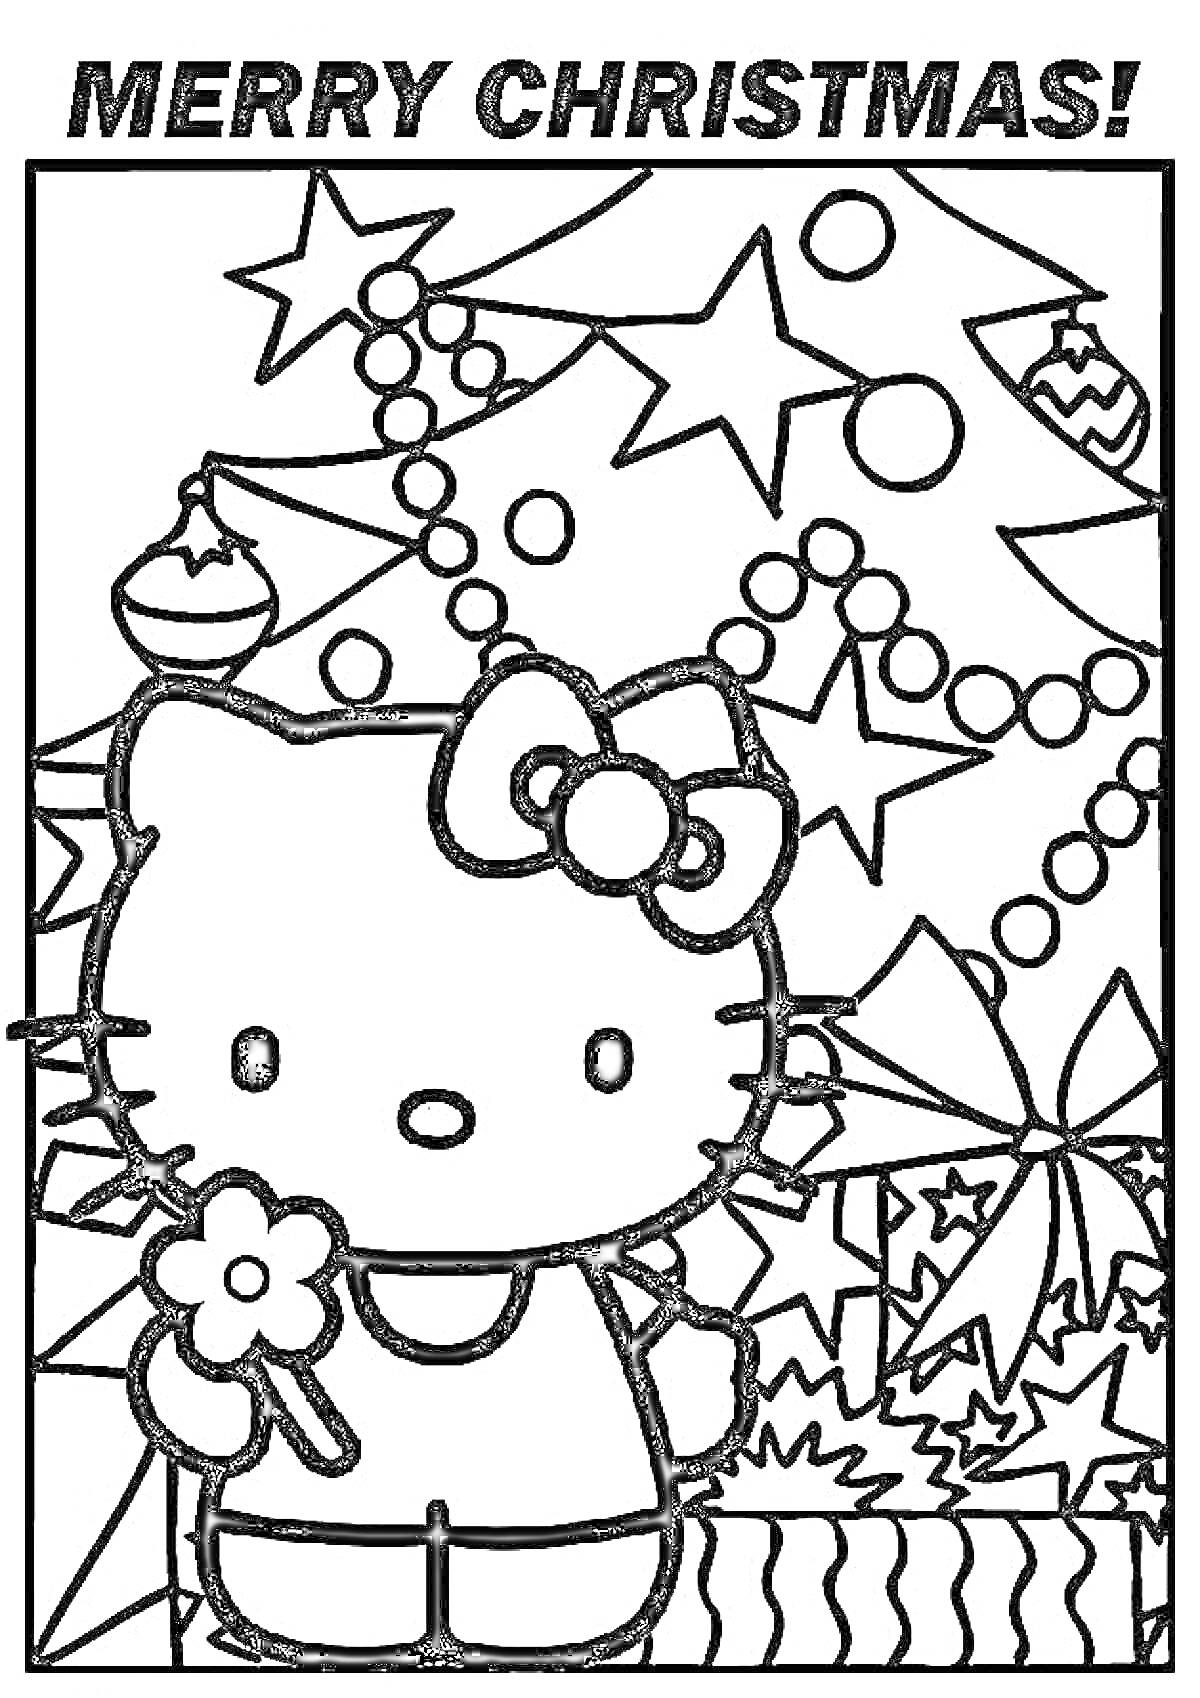 Раскраска Hello Kitty с цветком на фоне рождественской елки с шарами, гирляндами и звездочками